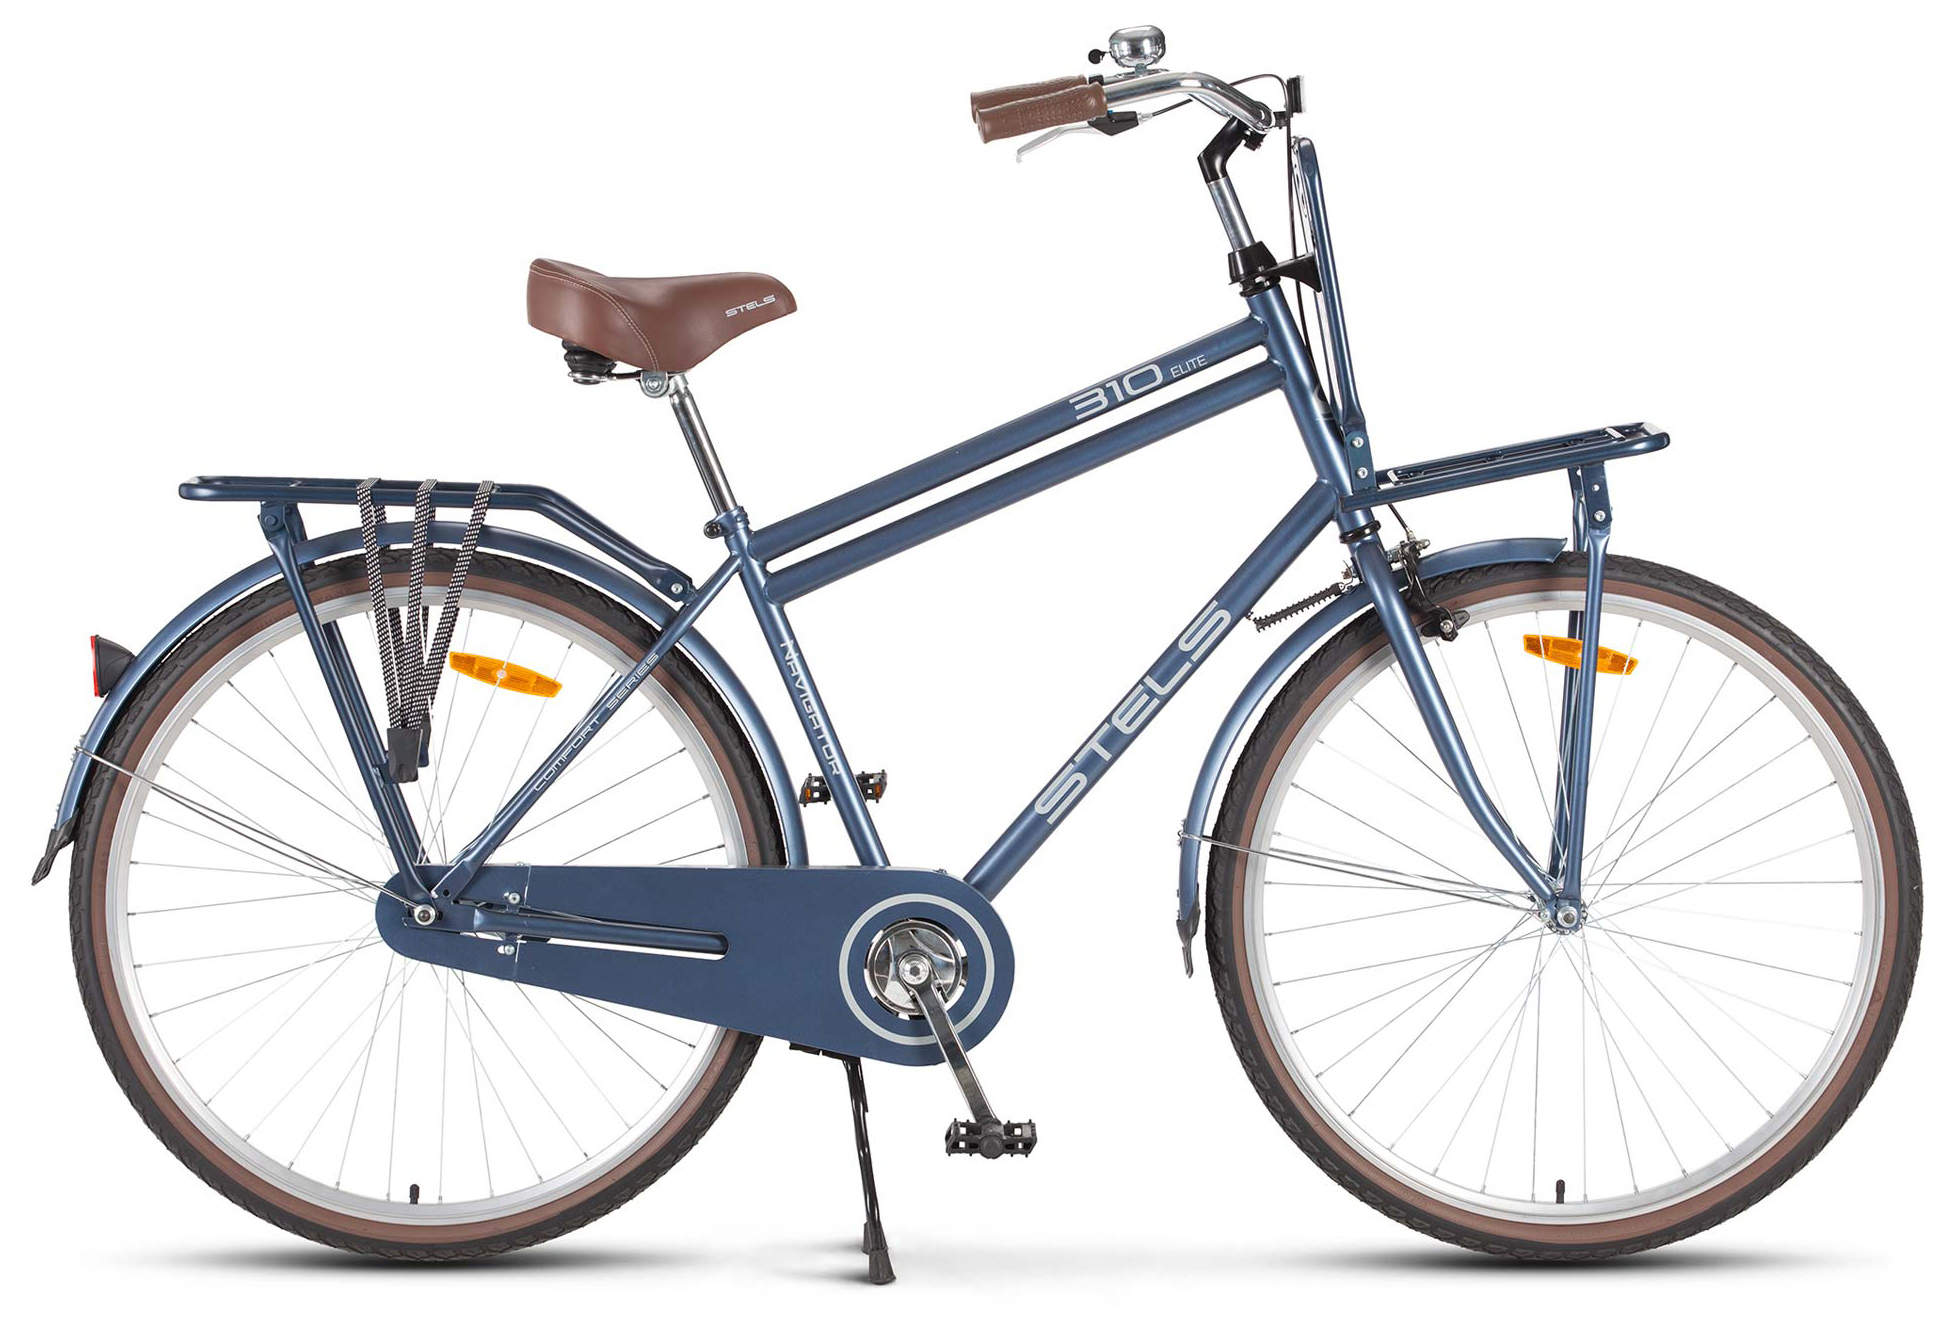  Отзывы о Городском велосипеде Stels Navigator 310 Gent 28" (V020) 2019